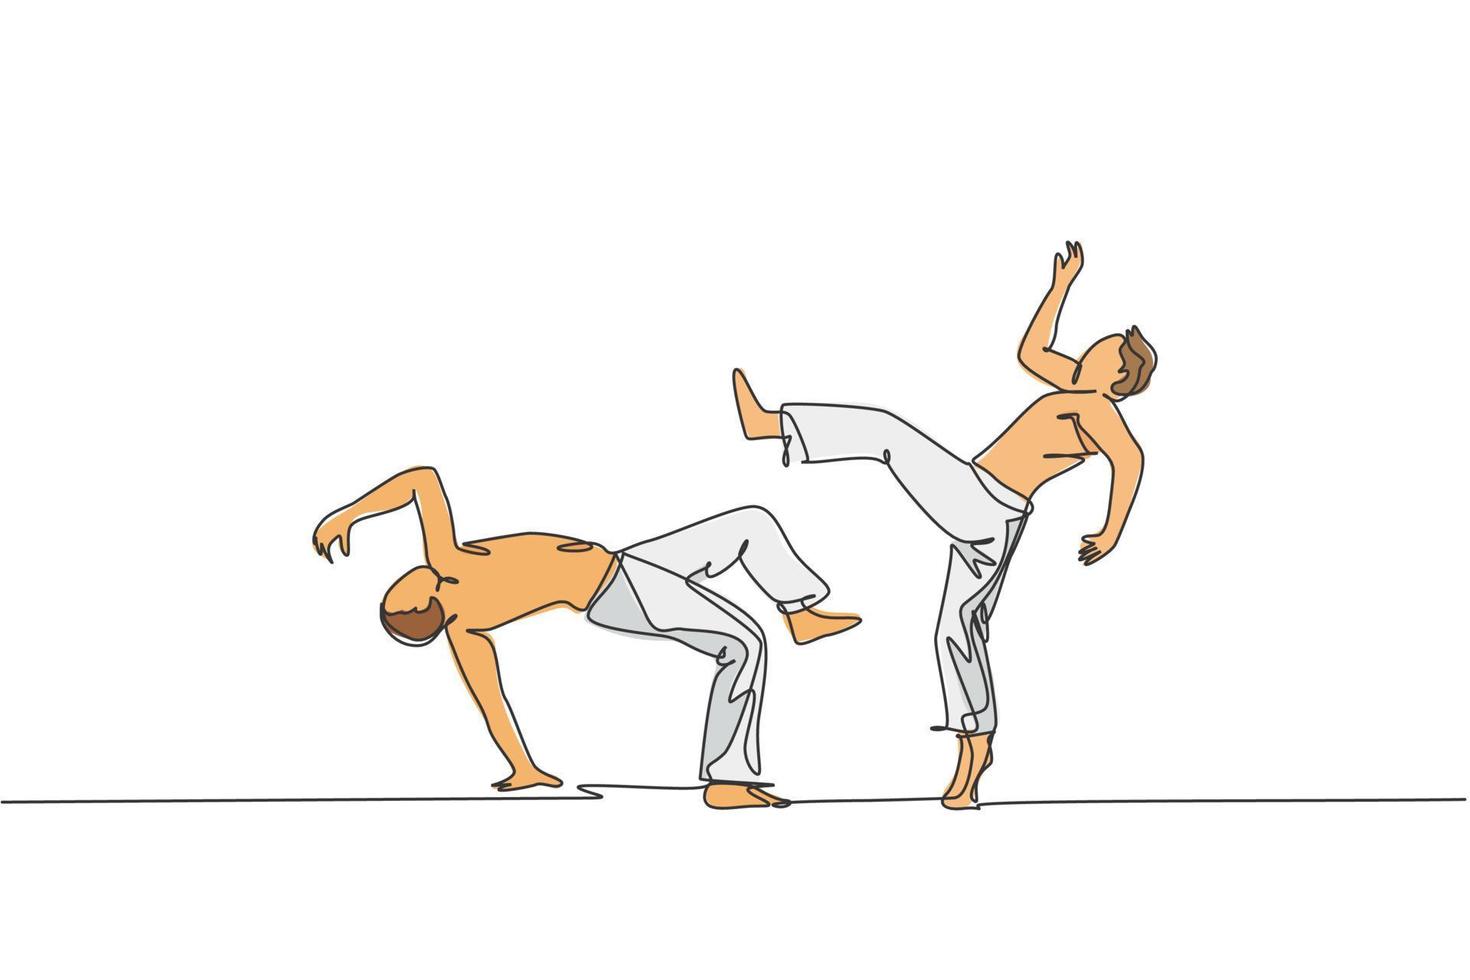 un unico disegno a linea continua di due giovani uomini sportivi praticano la danza brasiliana di capoeira in una strada all'aperto. concetto di sport di arte marziale di cultura. illustrazione vettoriale di disegno di una linea alla moda